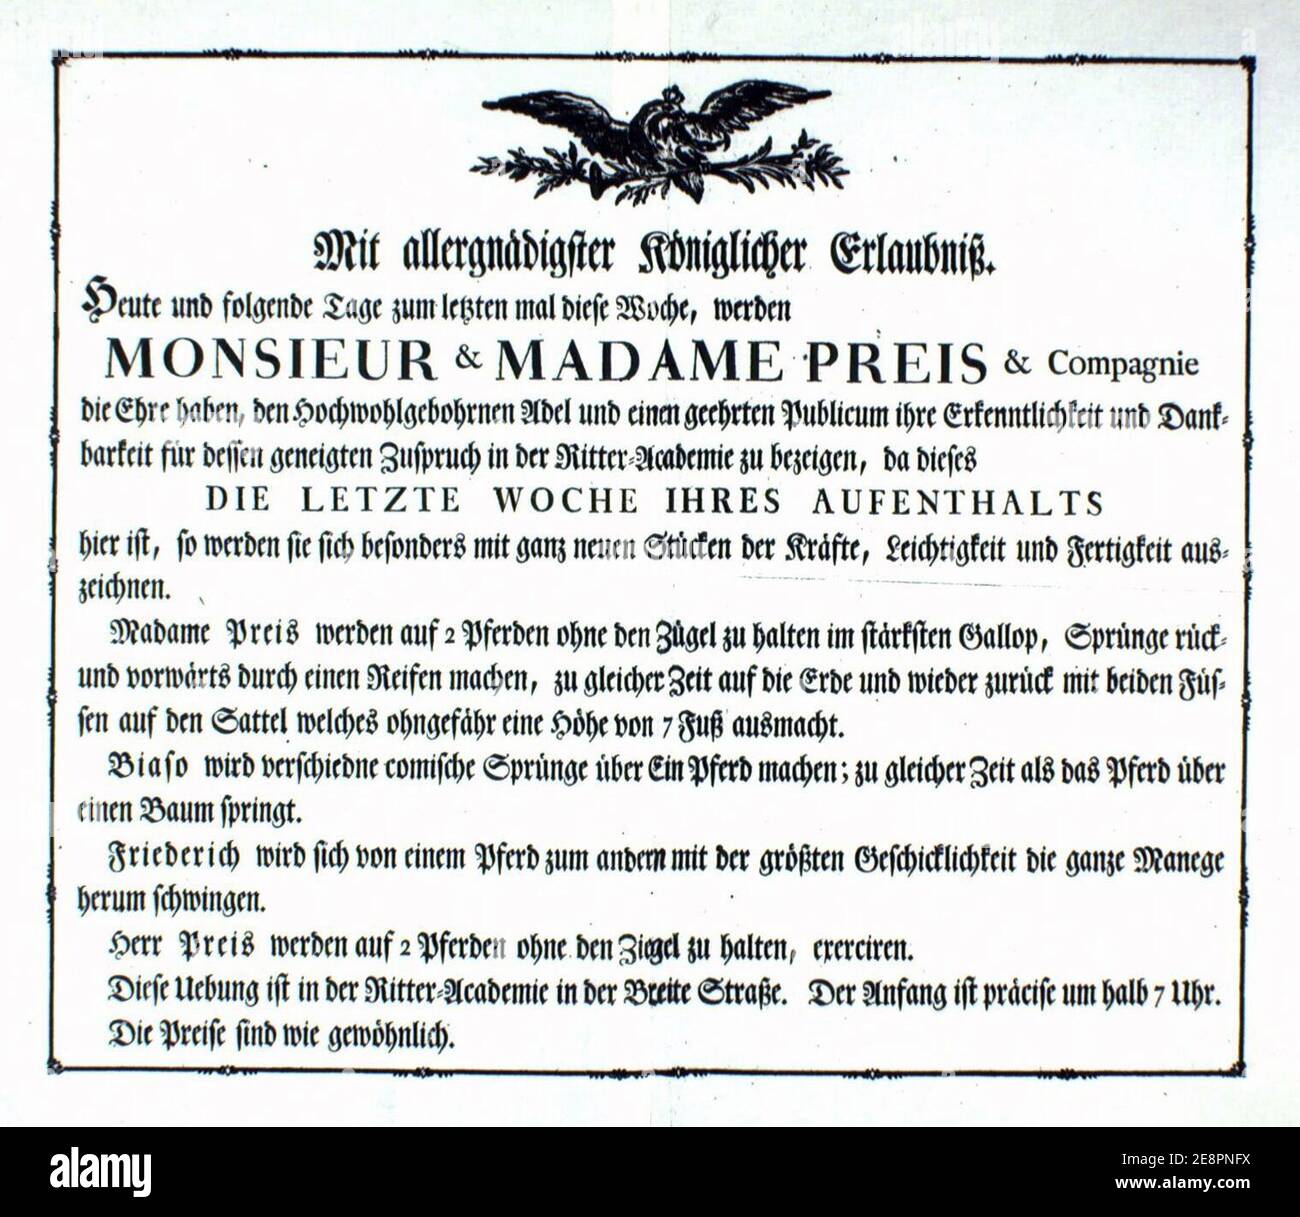 Monsieur-&-Madame Preis-&-Companie-1787 PL000150. Stockfoto